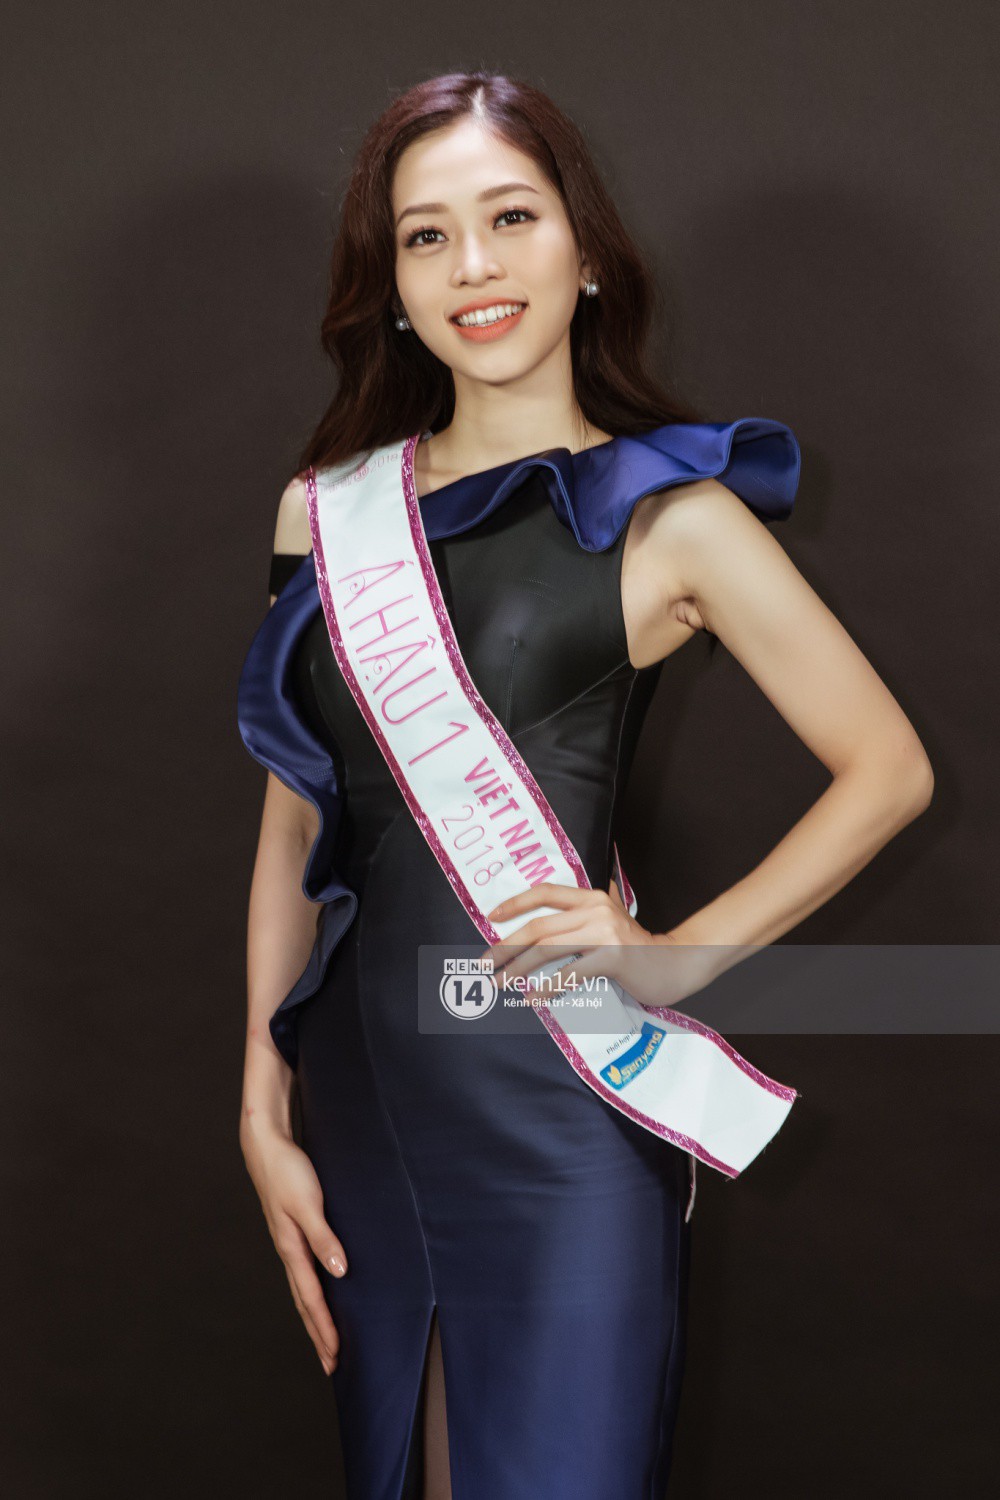 Ngắm cận vẻ đẹp của Top 3 Hoa hậu Việt Nam 2018: Mỹ nhân 2000 được khen sắc sảo, 2 nàng Á mười phân vẹn mười-9